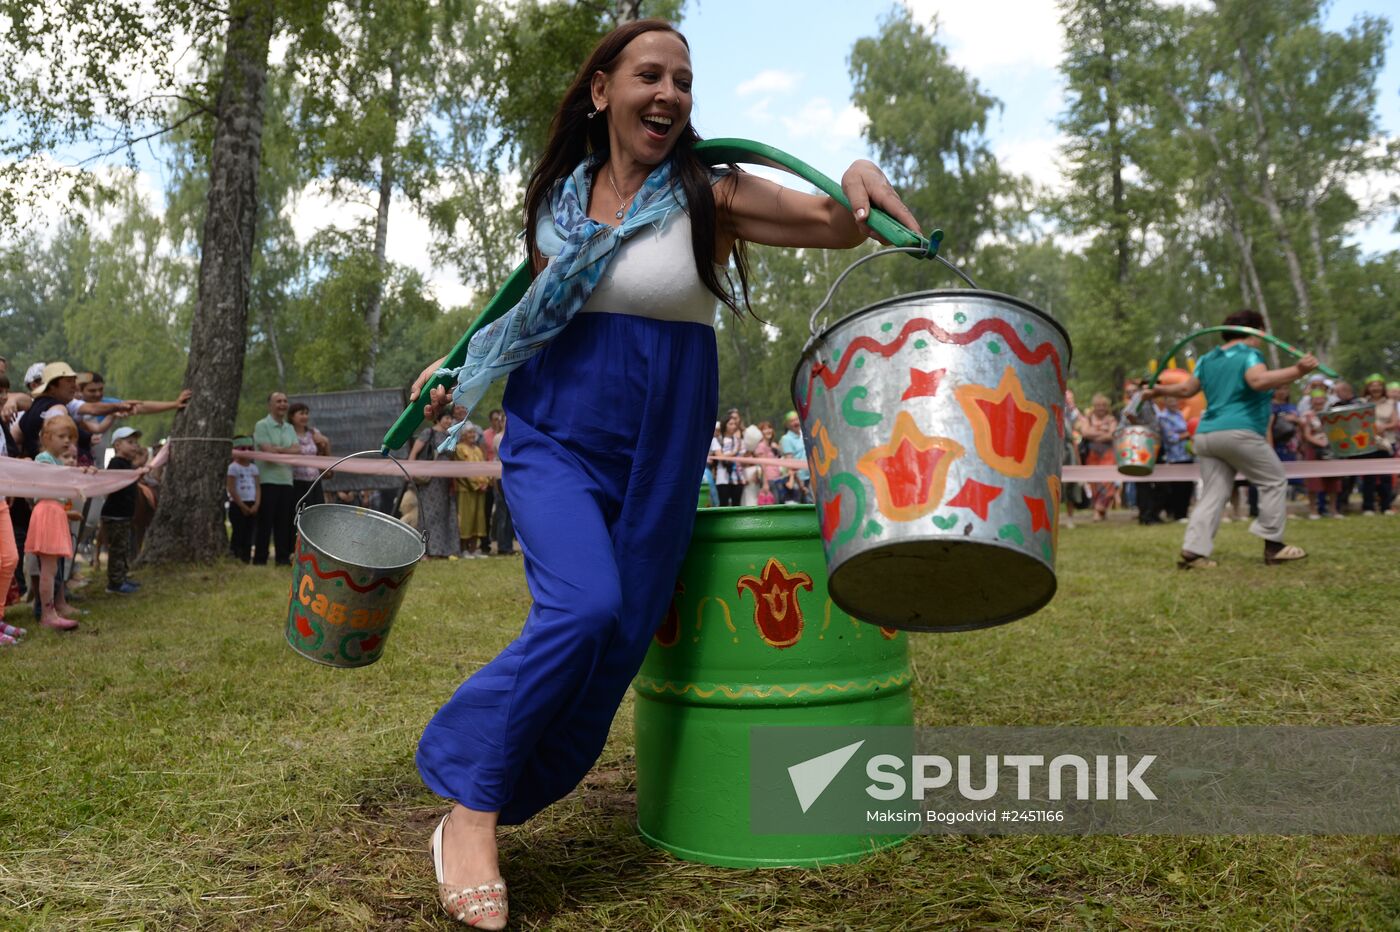 Sabantuy festival in Kazan